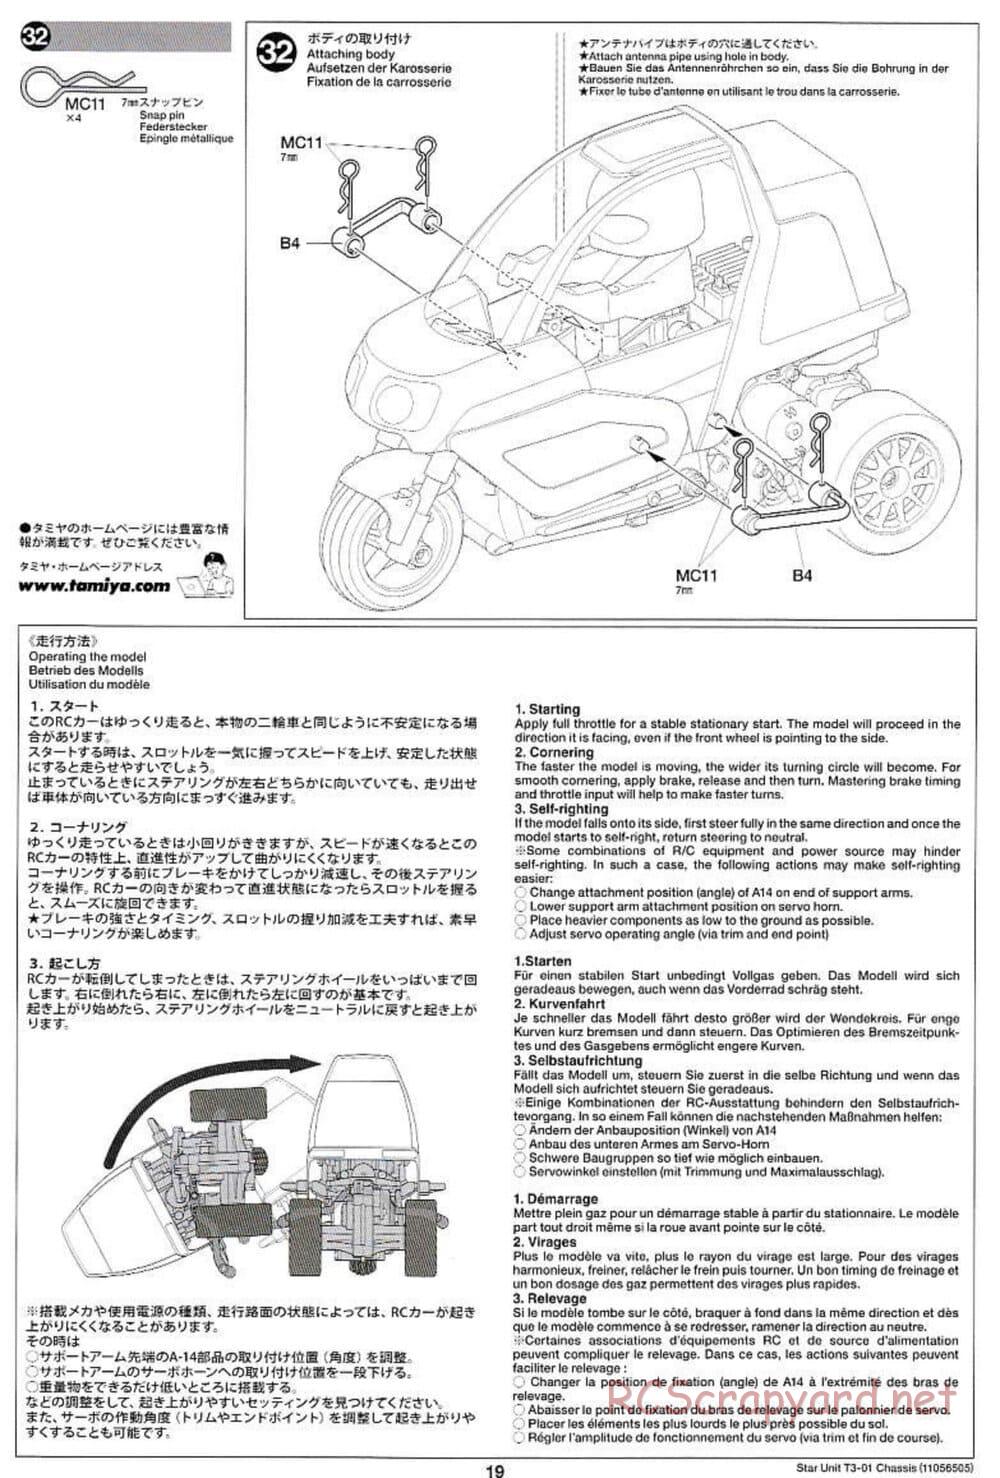 Tamiya - T3-01 Chassis - Manual - Page 19